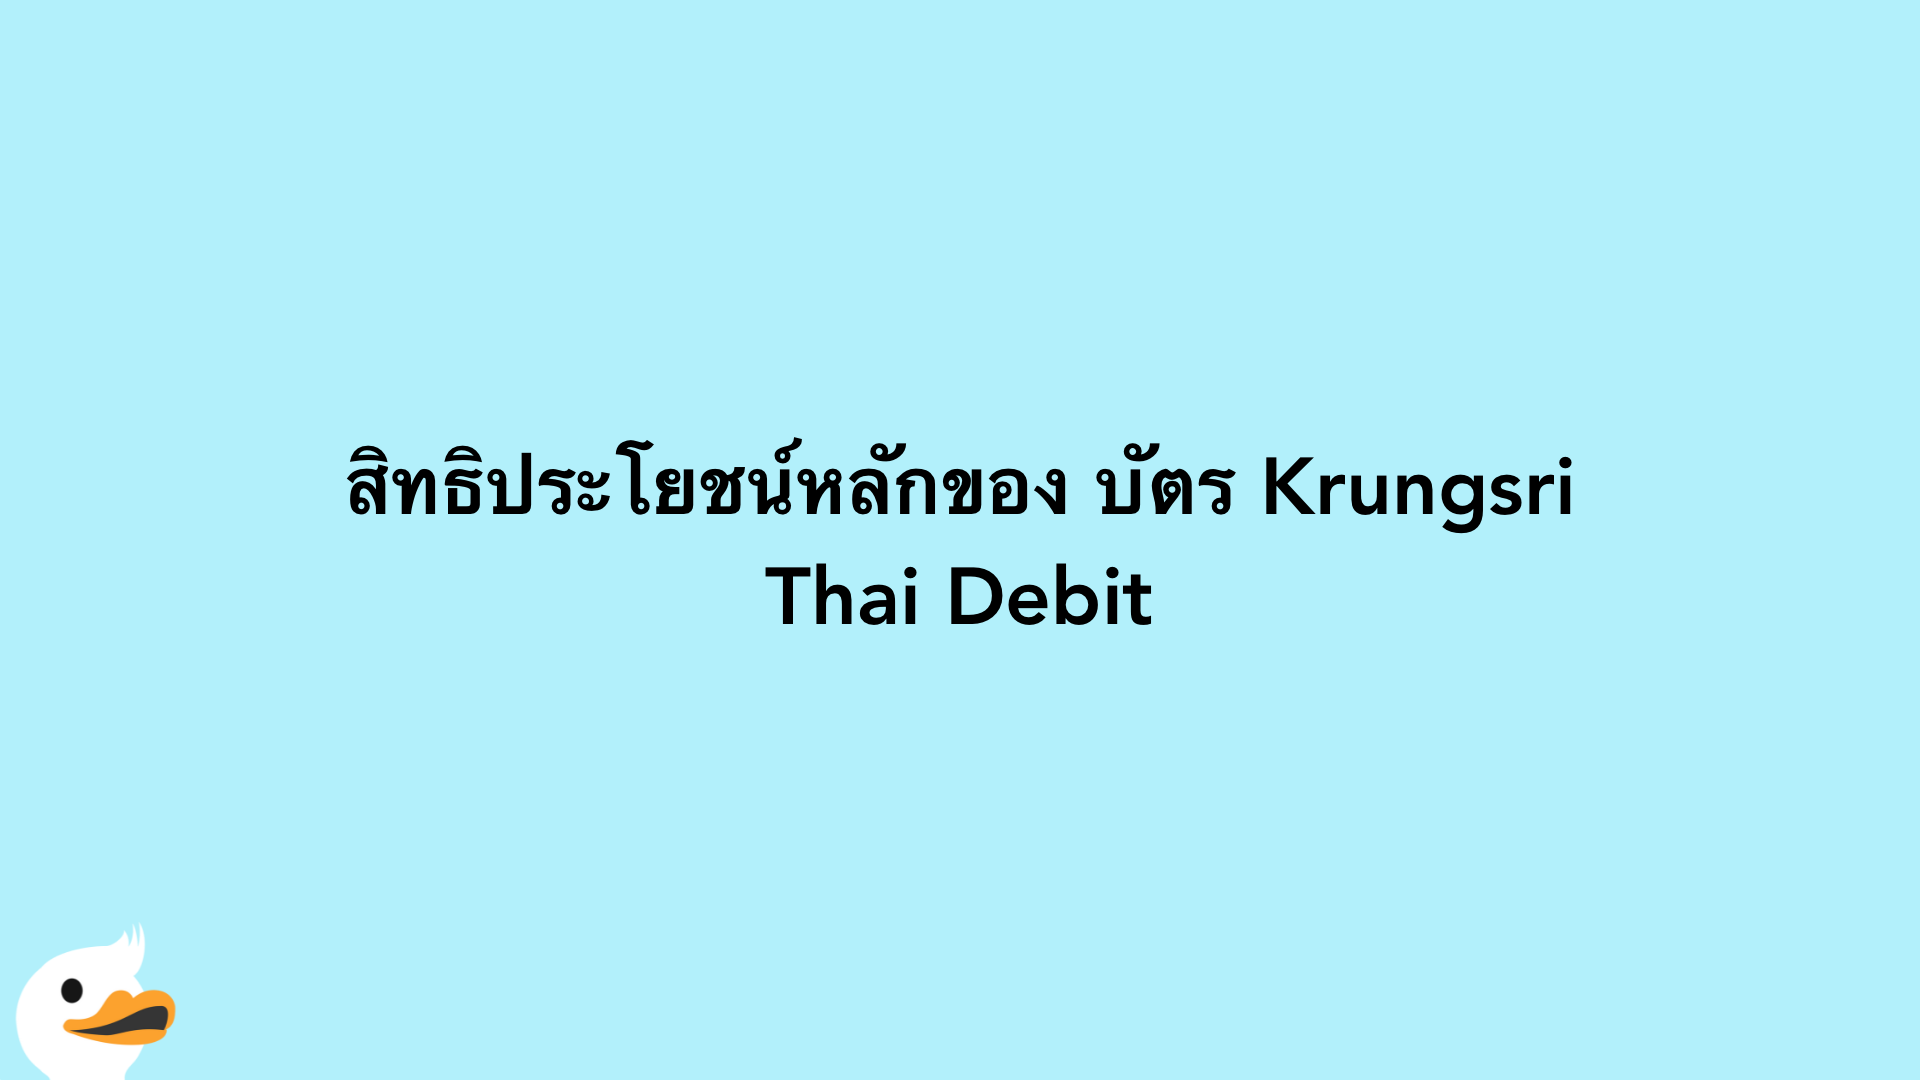 สิทธิประโยชน์หลักของ บัตร Krungsri Thai Debit